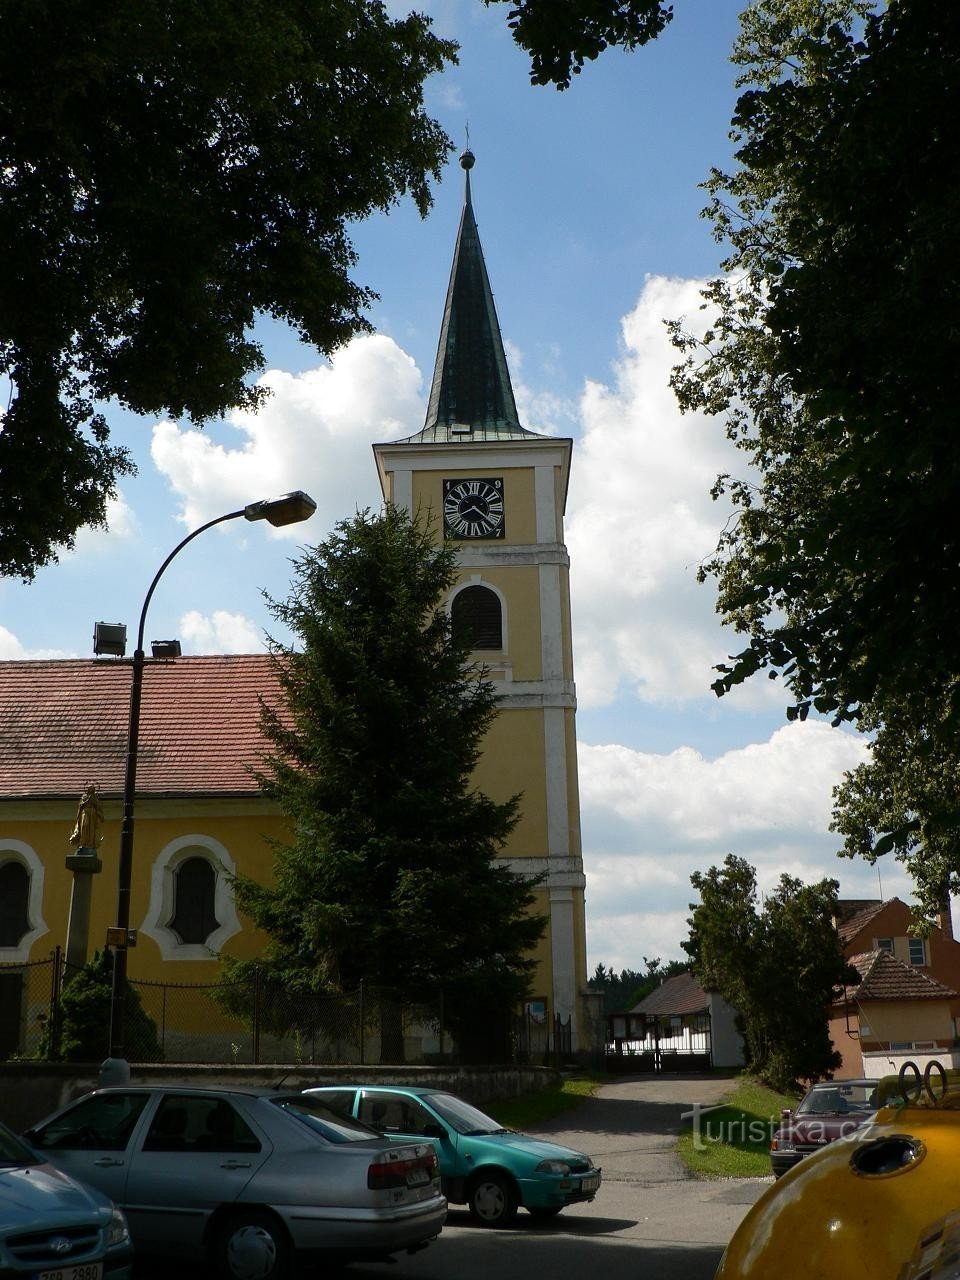 Střelské Hoštice, tower of the church of St. Martin